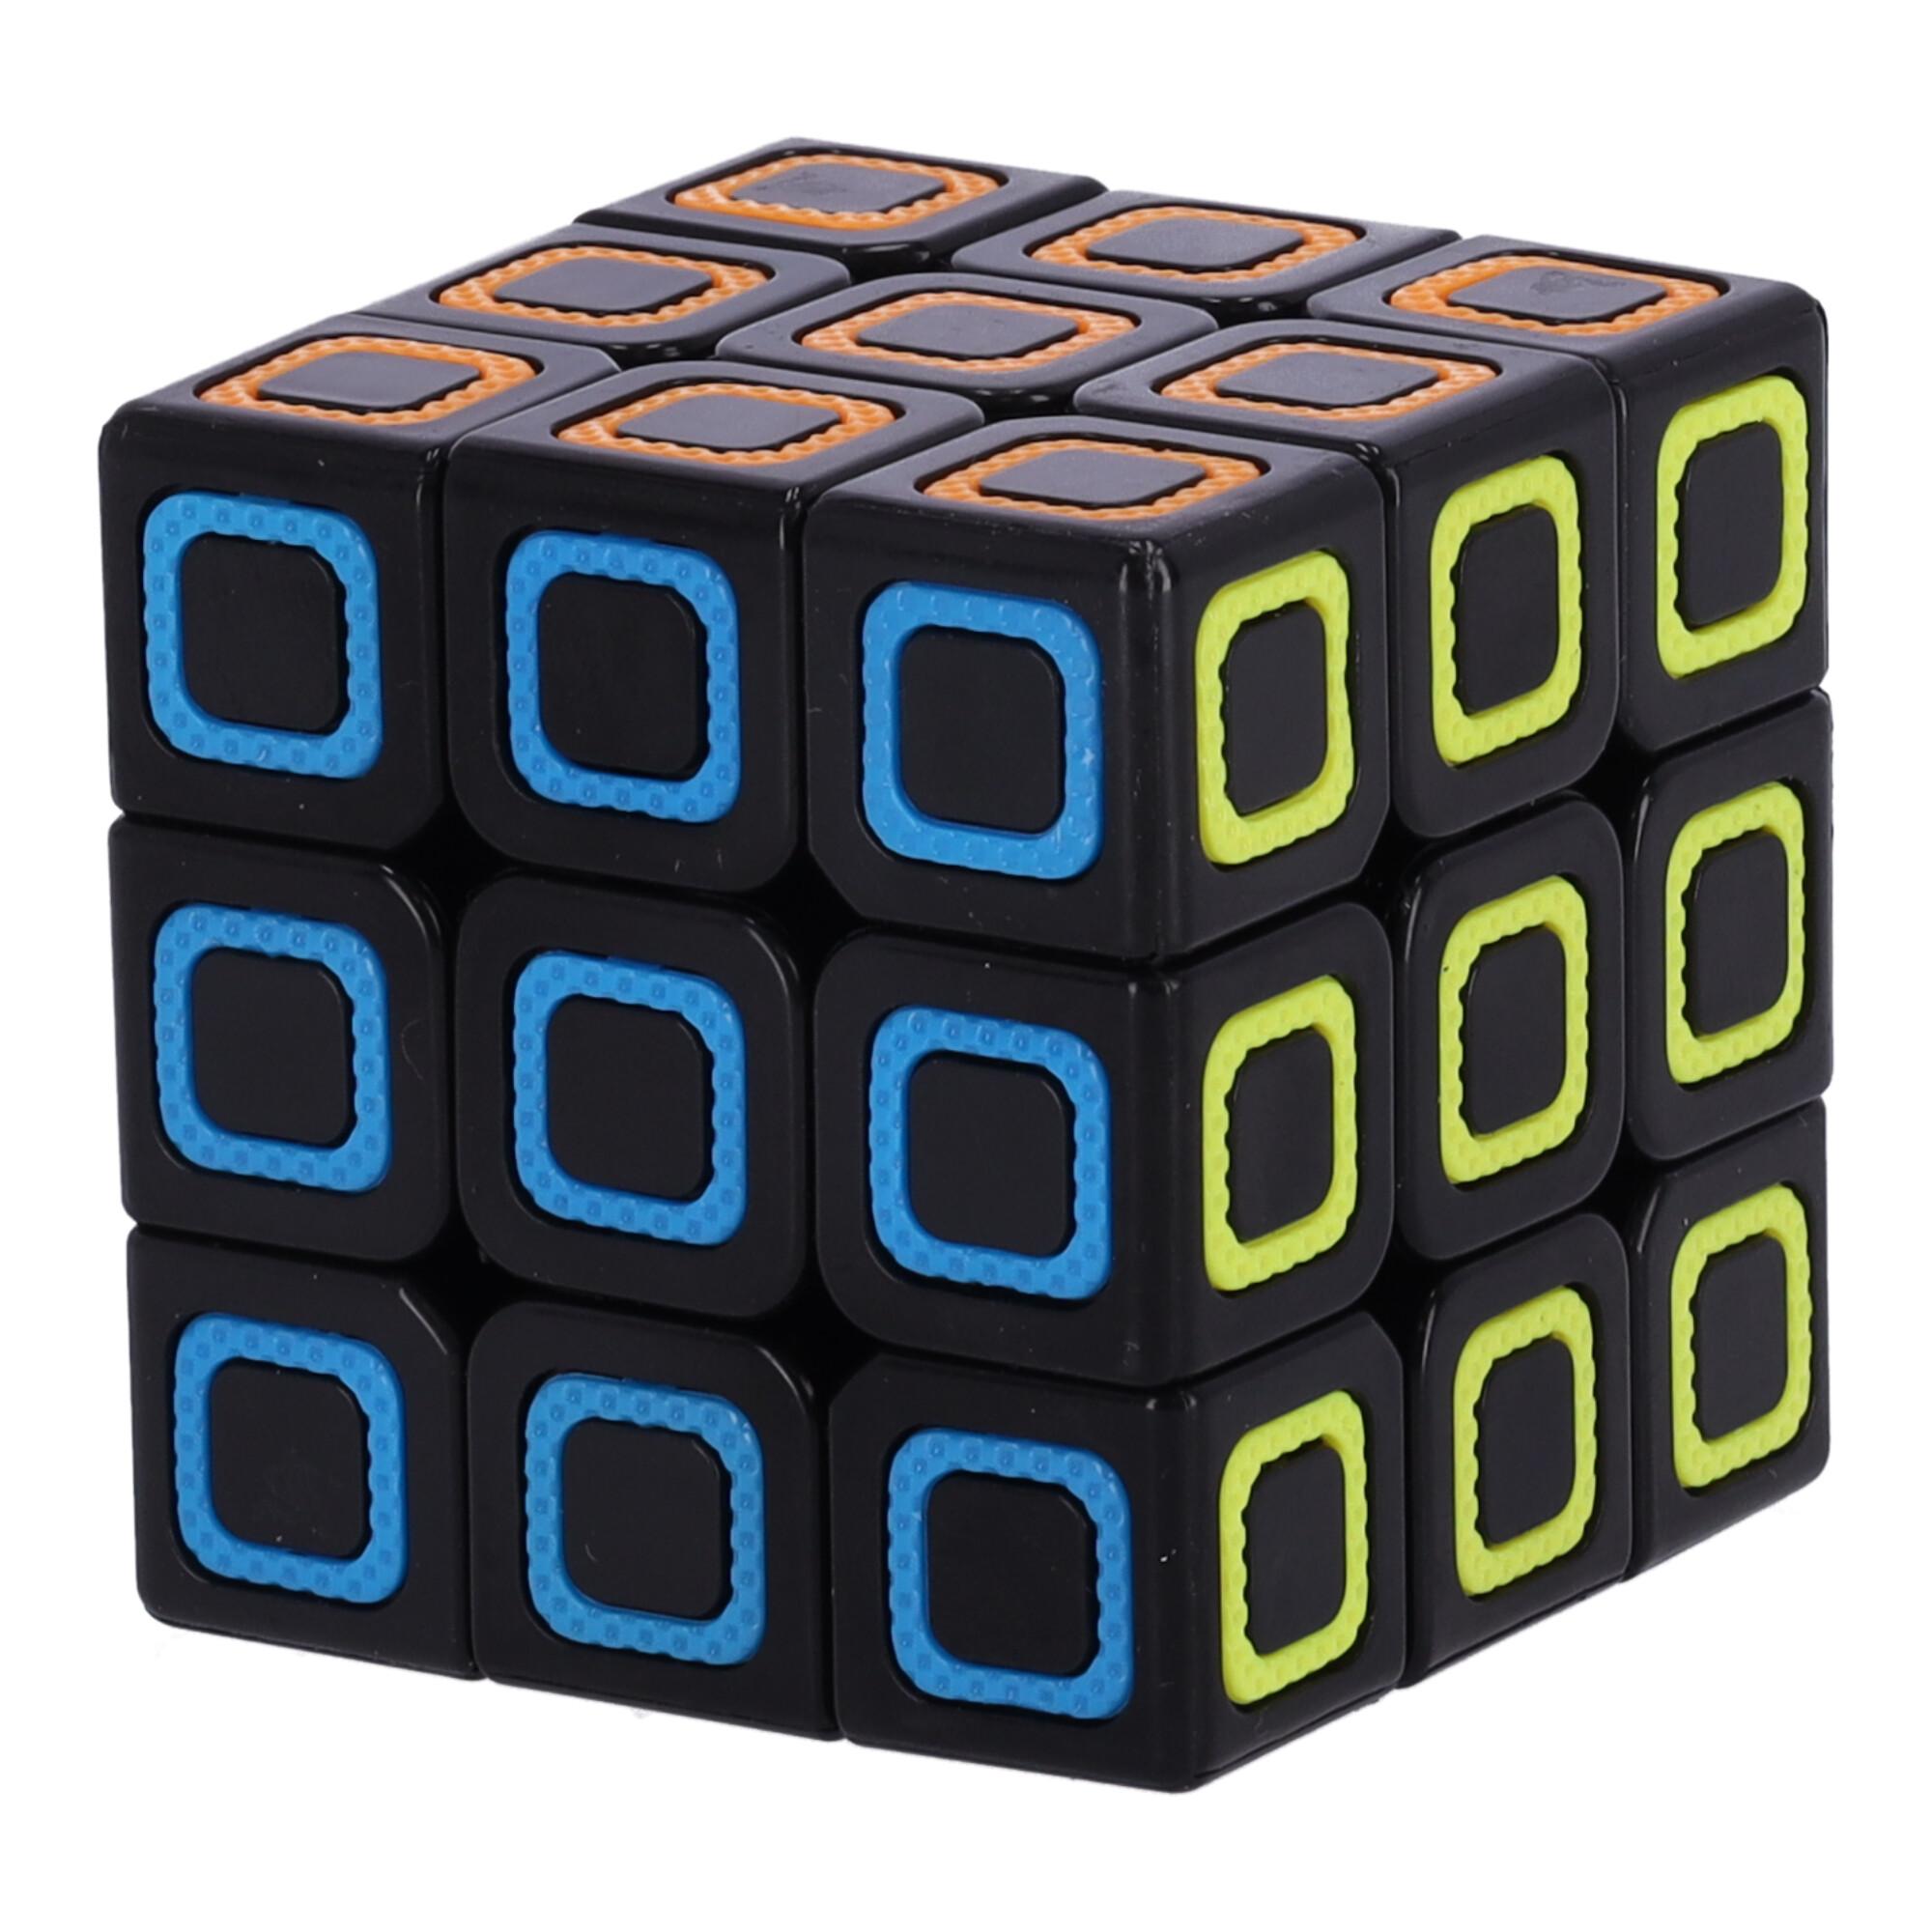 Nowoczesna układanka, kostka logiczna, Kostka Rubika - typ VIII